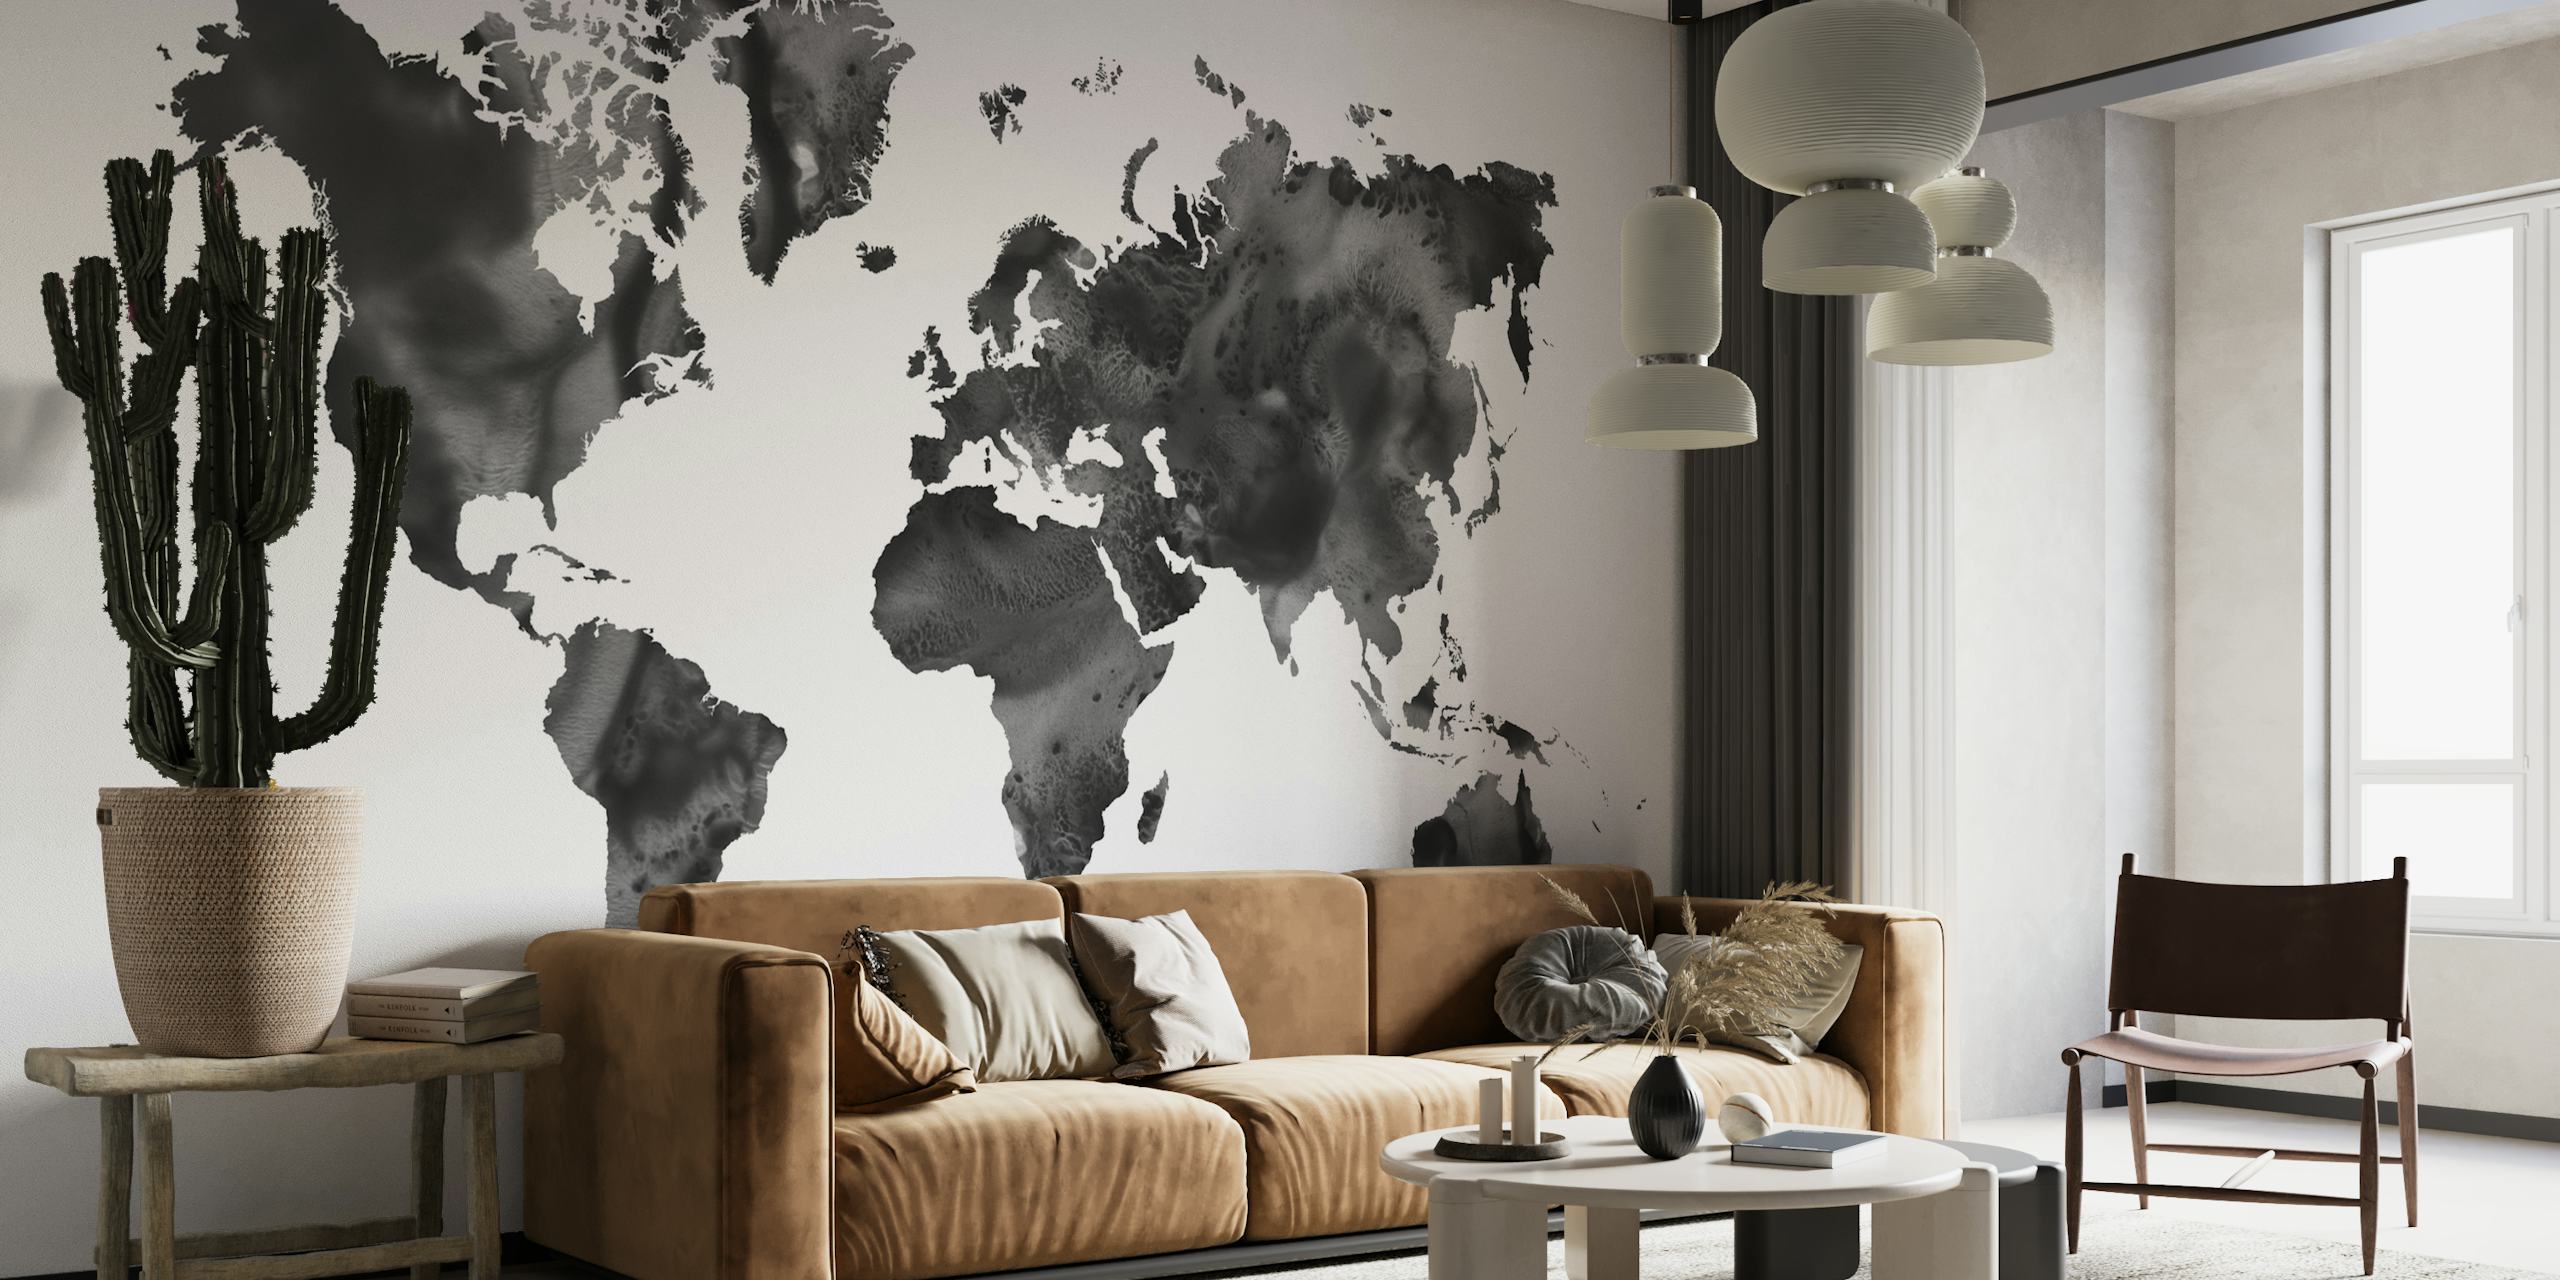 Watercolor World Map in Black papel pintado